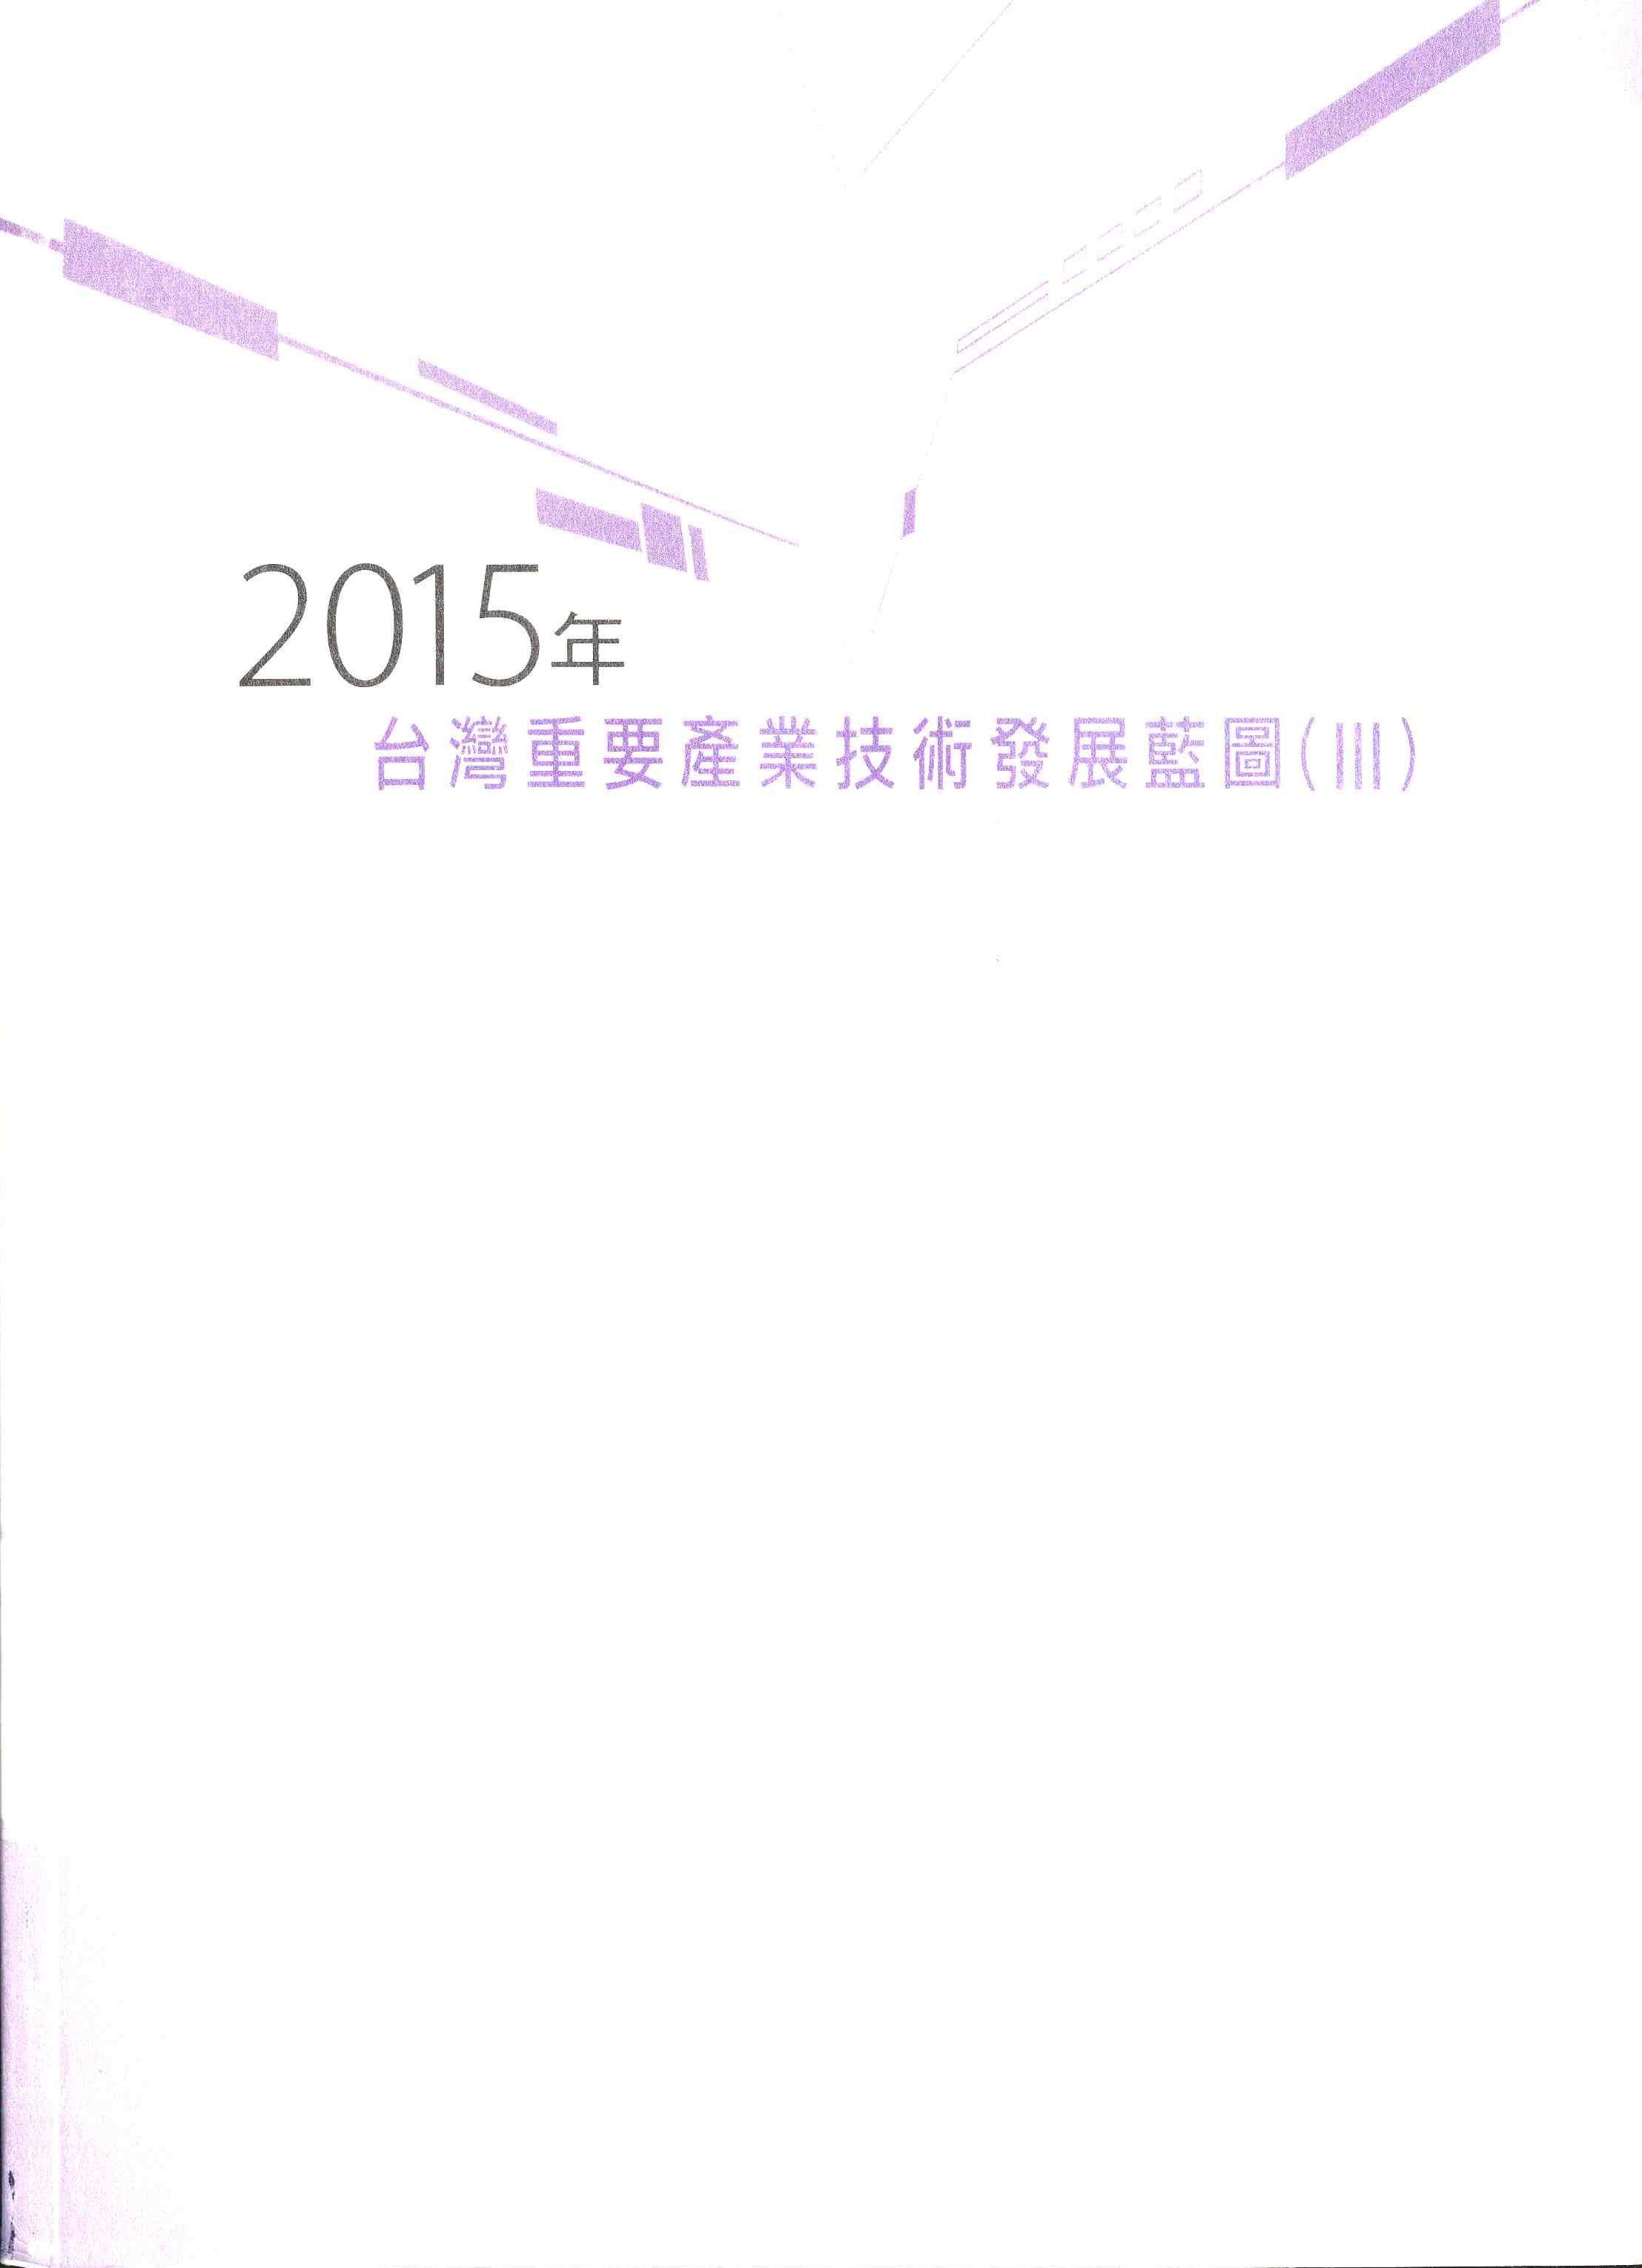 2015年台灣重要產業技術發展藍圖(Ⅲ)